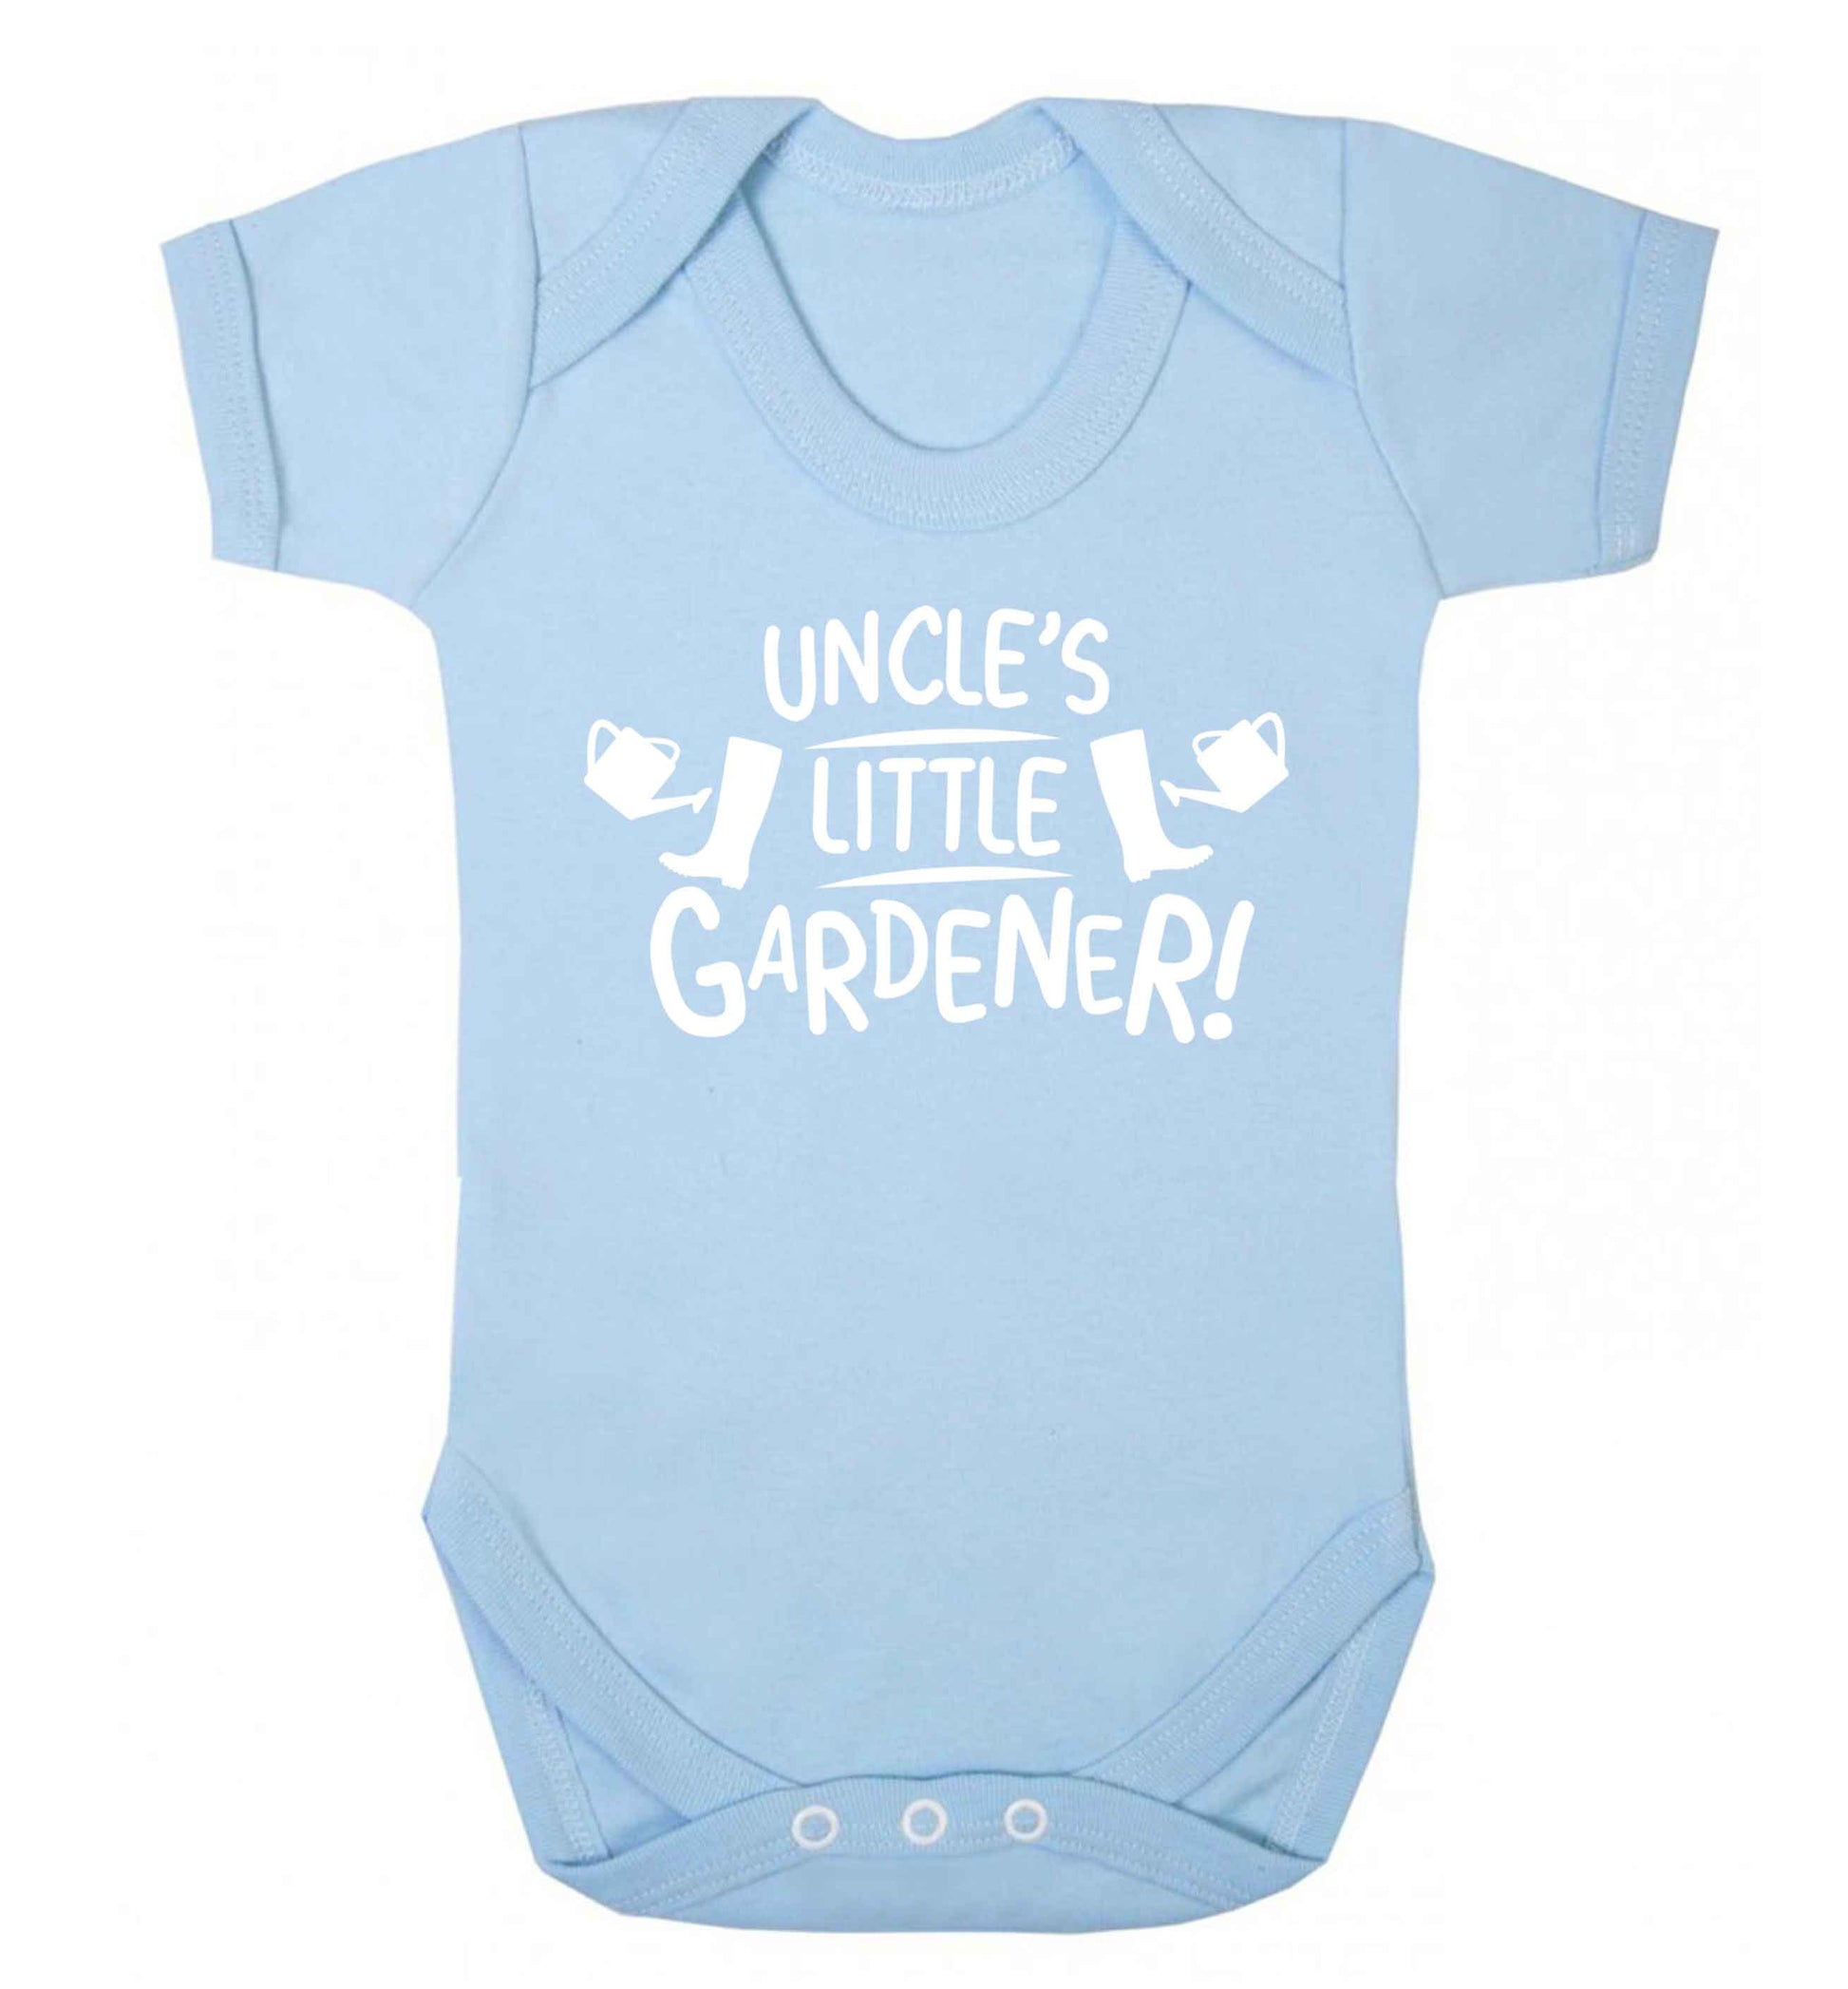 Uncle's little gardener Baby Vest pale blue 18-24 months